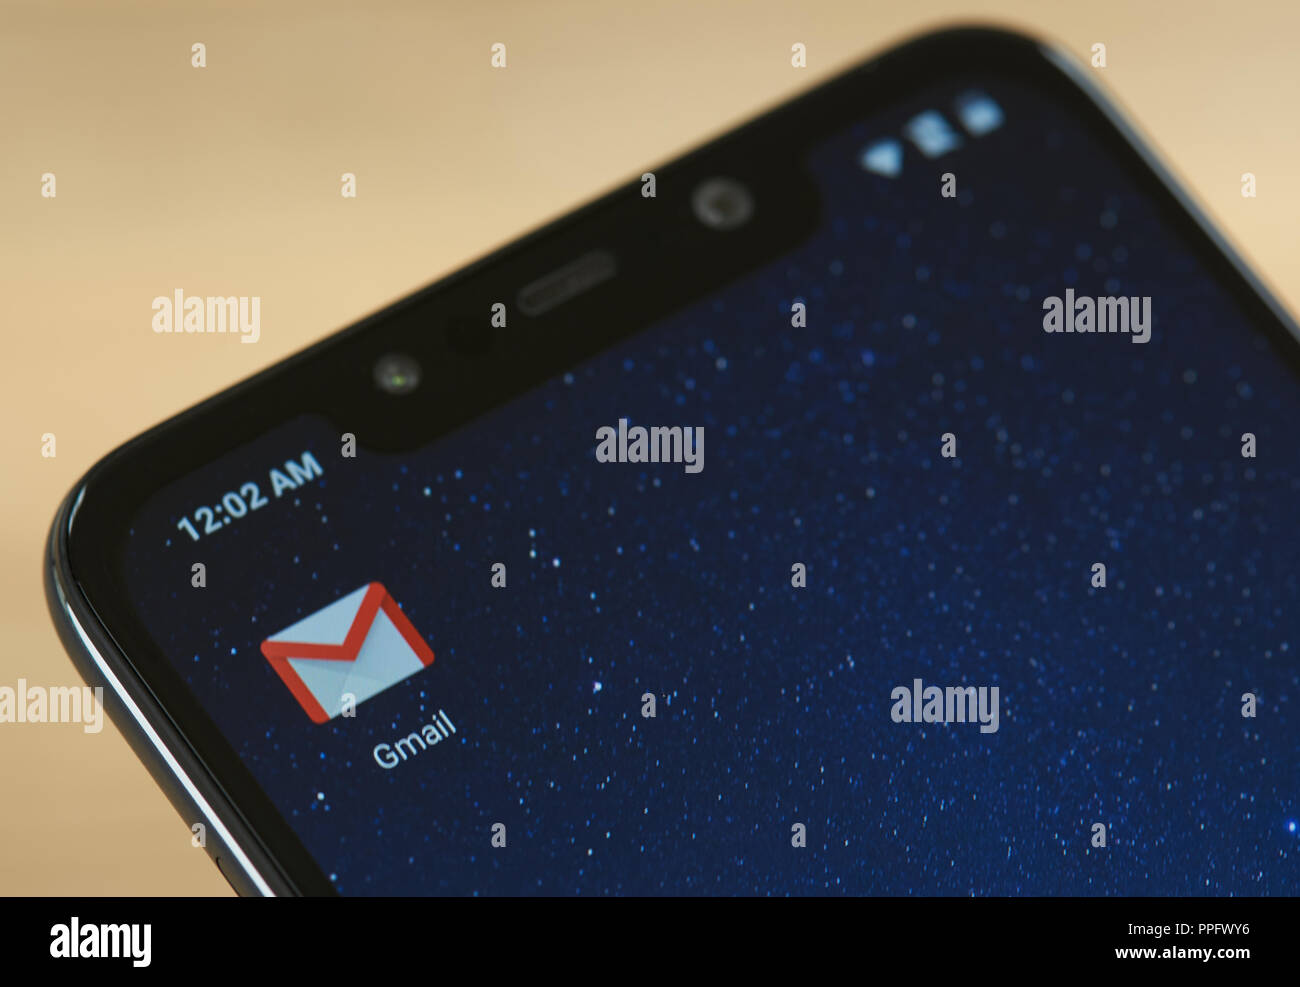 New york, Stati Uniti d'America - 24 settembre 2018: Gmail logo di posta elettronica sulla schermata dello smartphone vicino fino Foto Stock